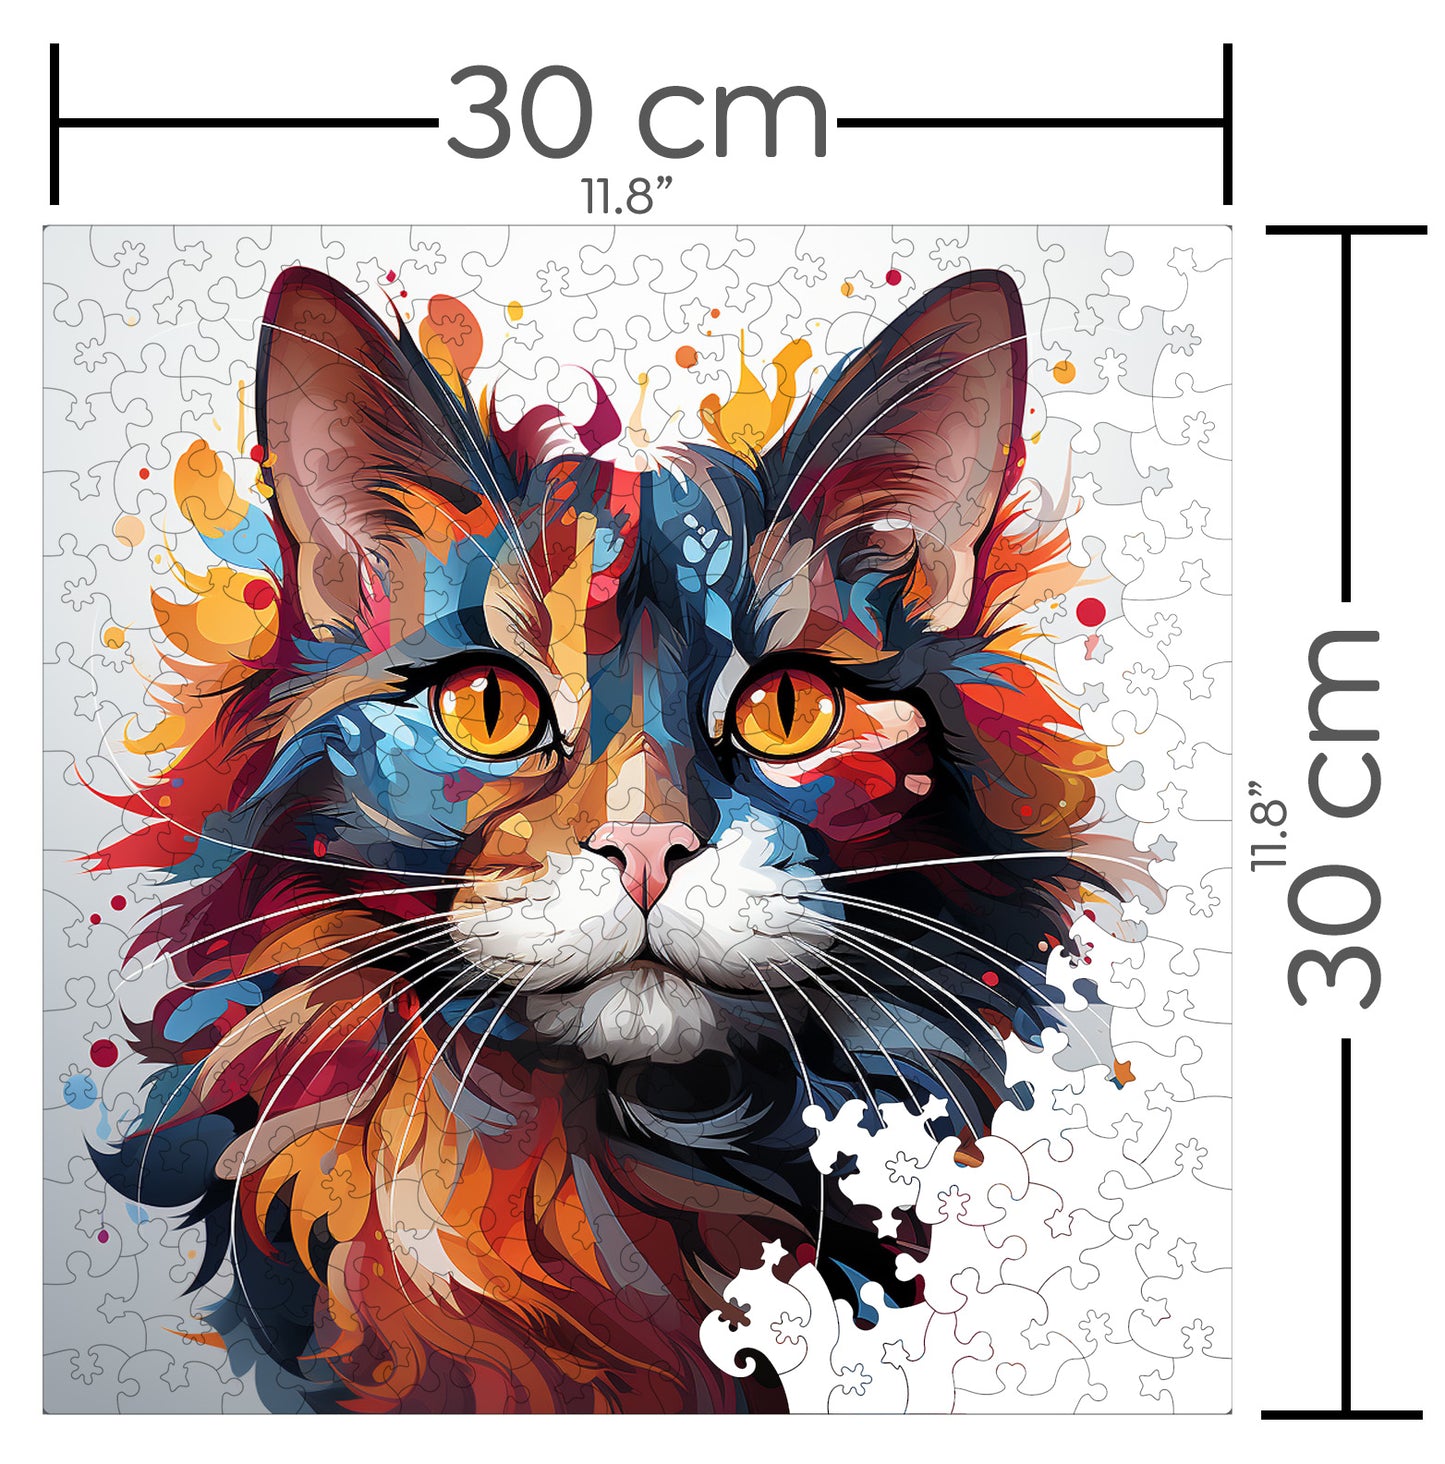 Puzzle cu Pisici - Javanese 3 - 200 piese - 30 x 30 cm